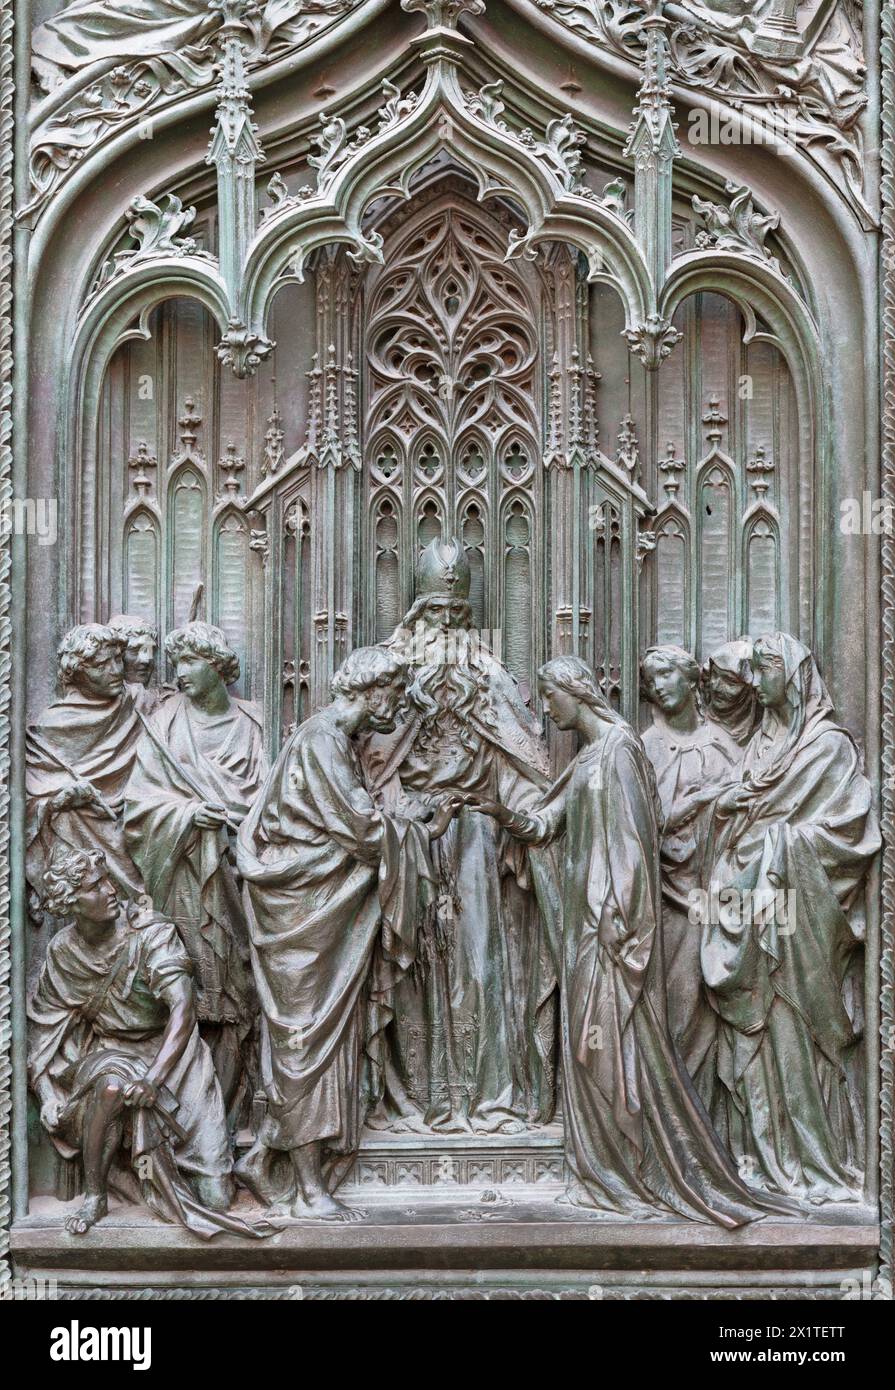 MAILAND, ITALIEN - 16. SEPTEMBER 2024: Das Detail aus dem Bronzetor der Kathedrale - Ehefrau von St. Joseph und Jungfrau Maria - von Ludovico Pogliaghi Stockfoto